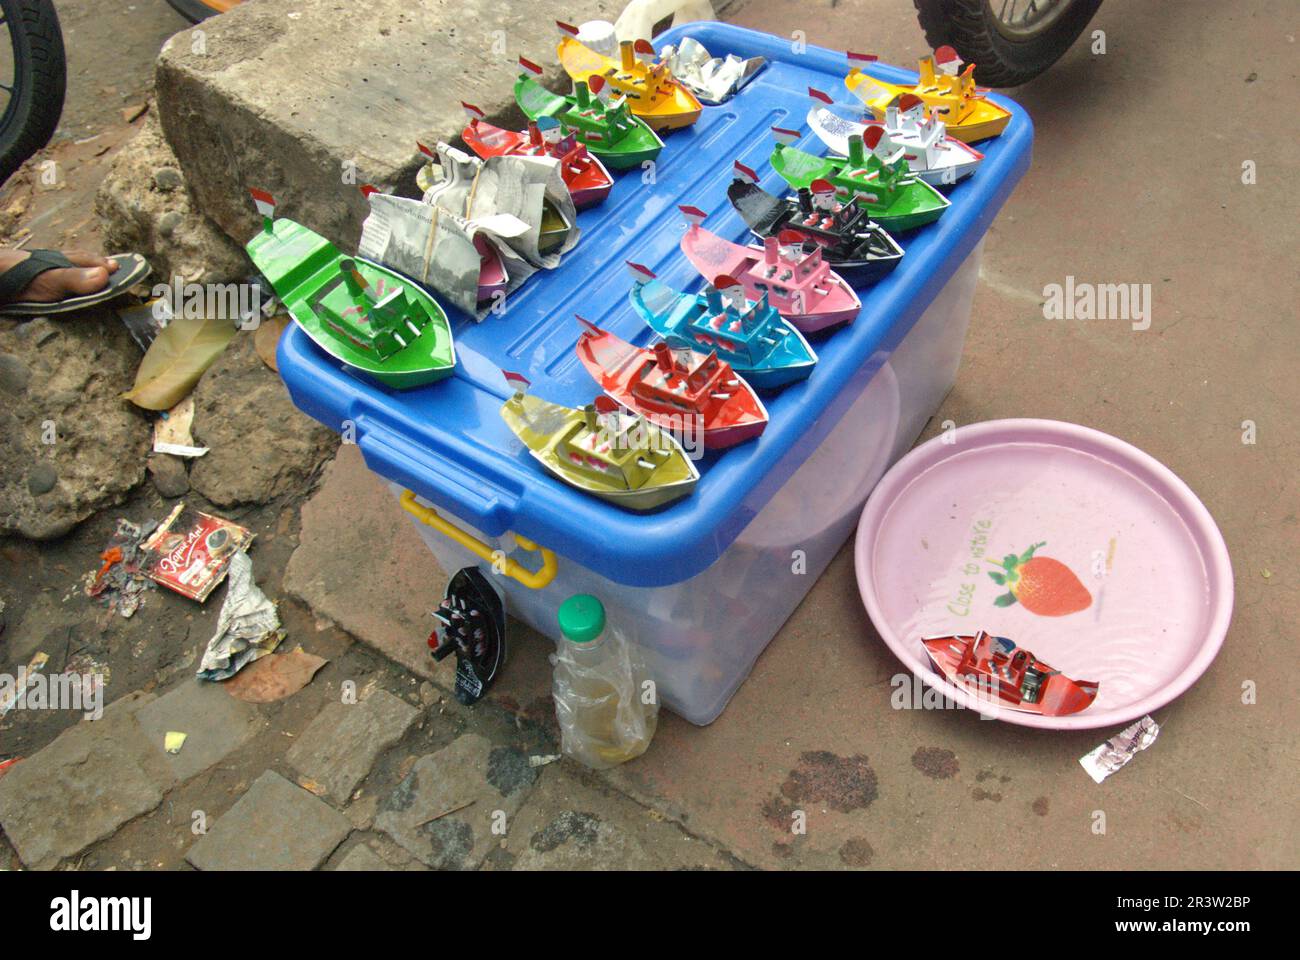 Auf einem Straßenmarkt in Jatinegara, East Jakarta, Jakarta, Indonesien, werden Boote für Kinder aus Metall verkauft. Stockfoto